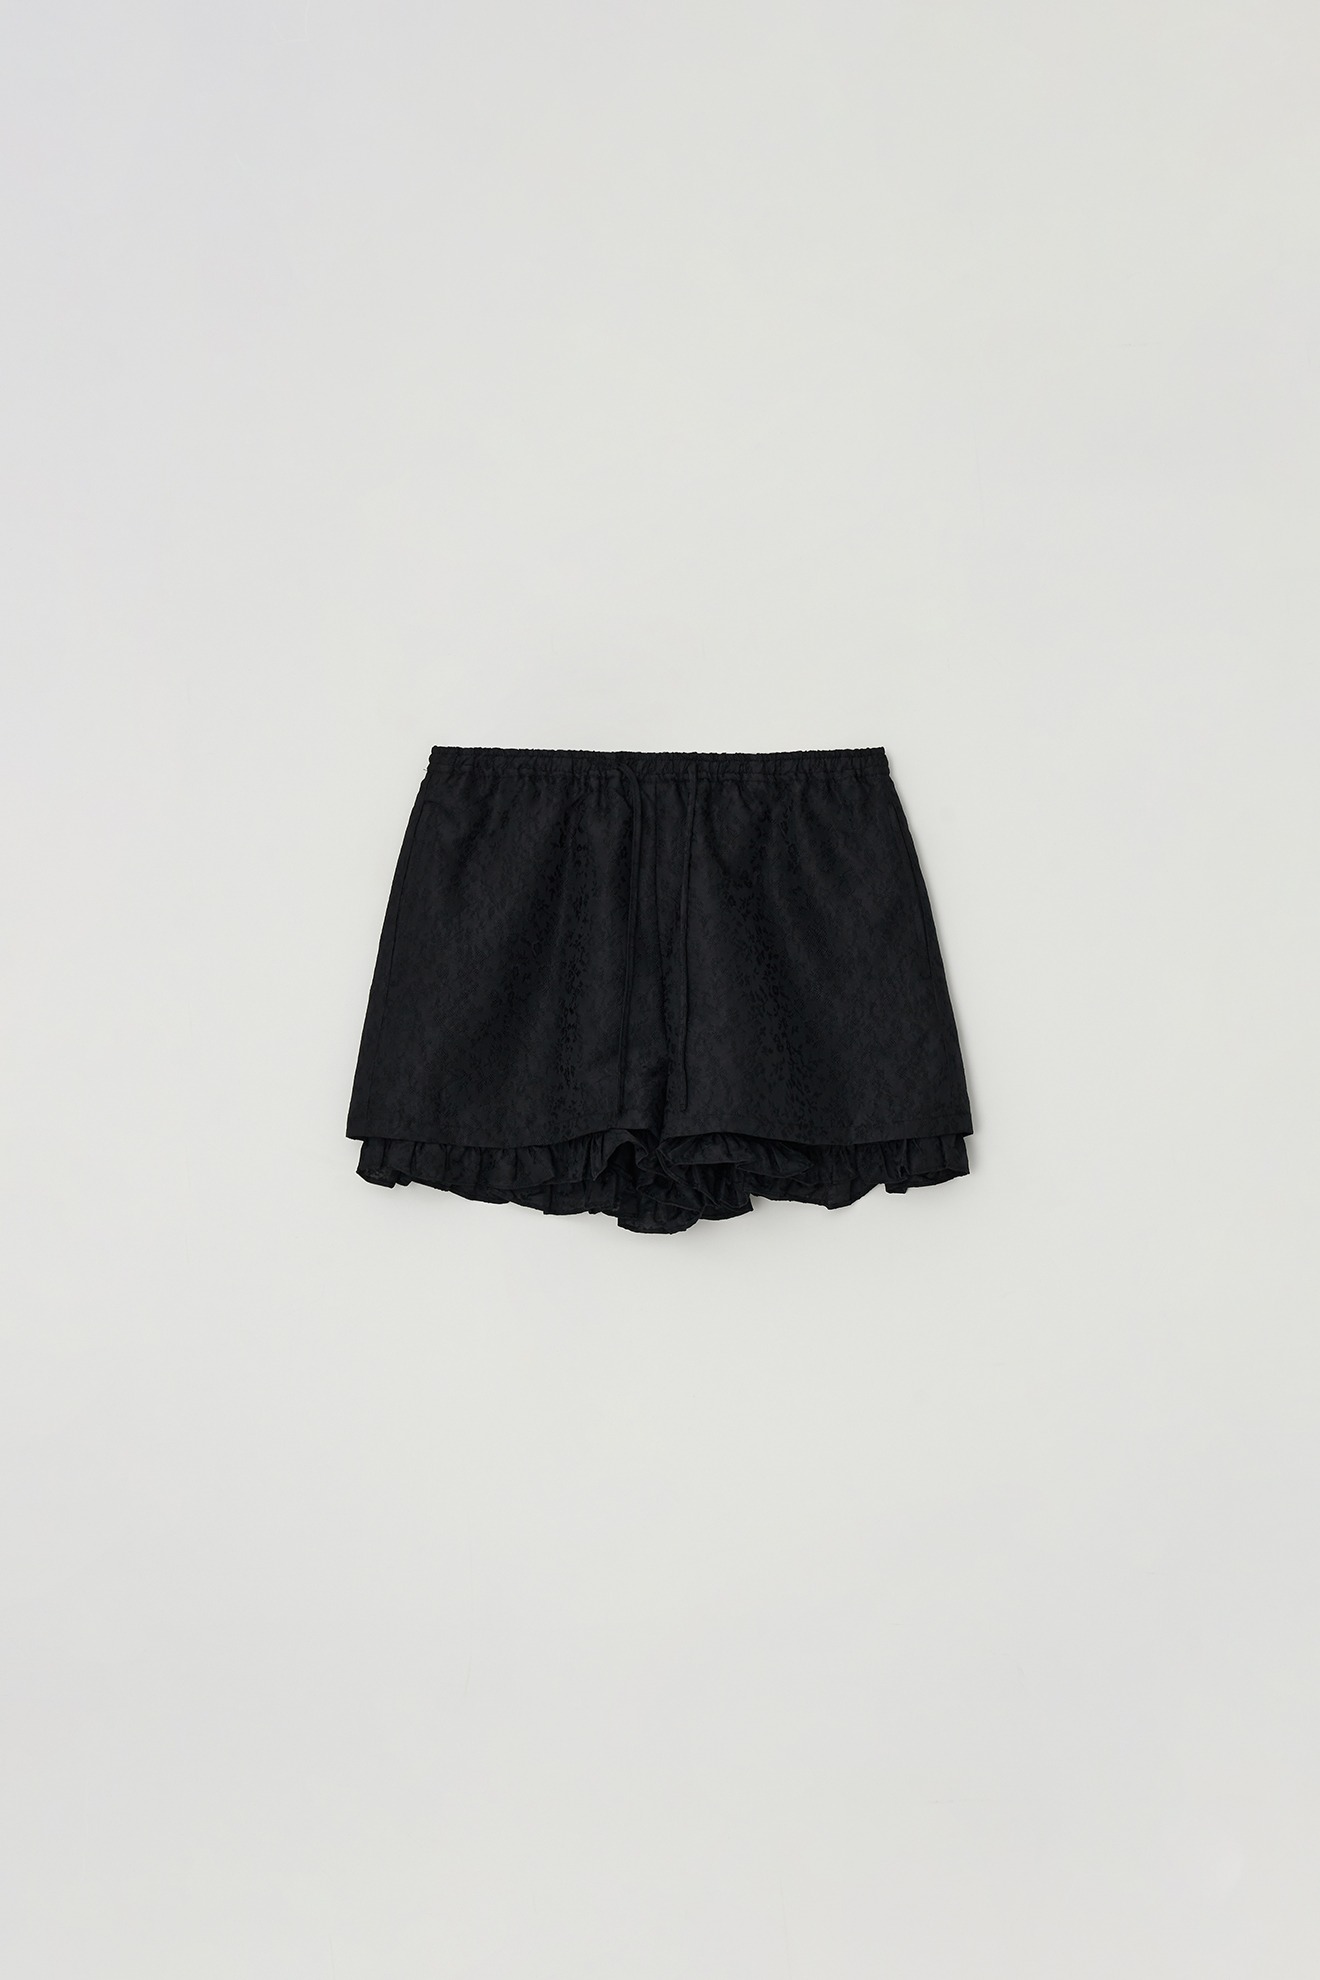 Jacquard Shorts (black)